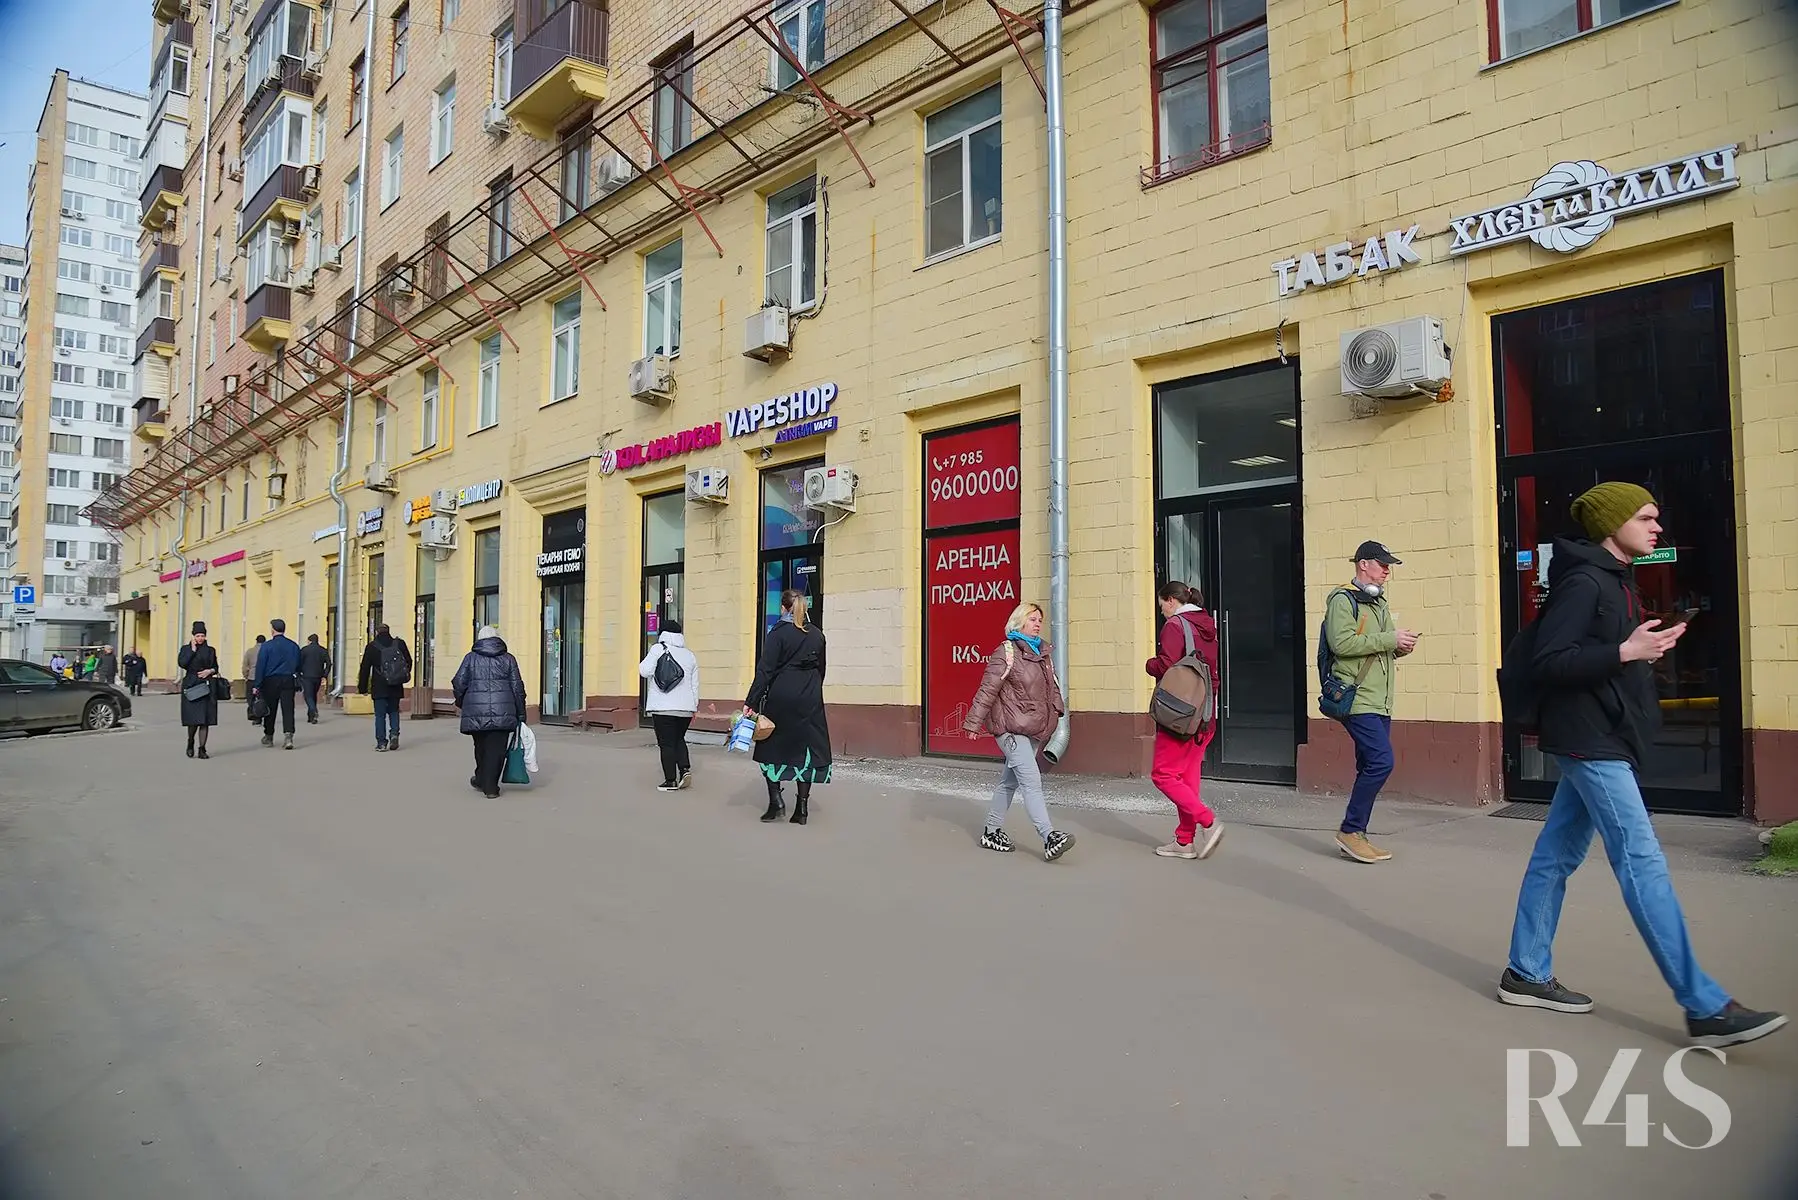 Аренда торговых помещений площадью 180 - 205.2 м2 в Москве:  Щербаковская, 35 R4S | Realty4Sale